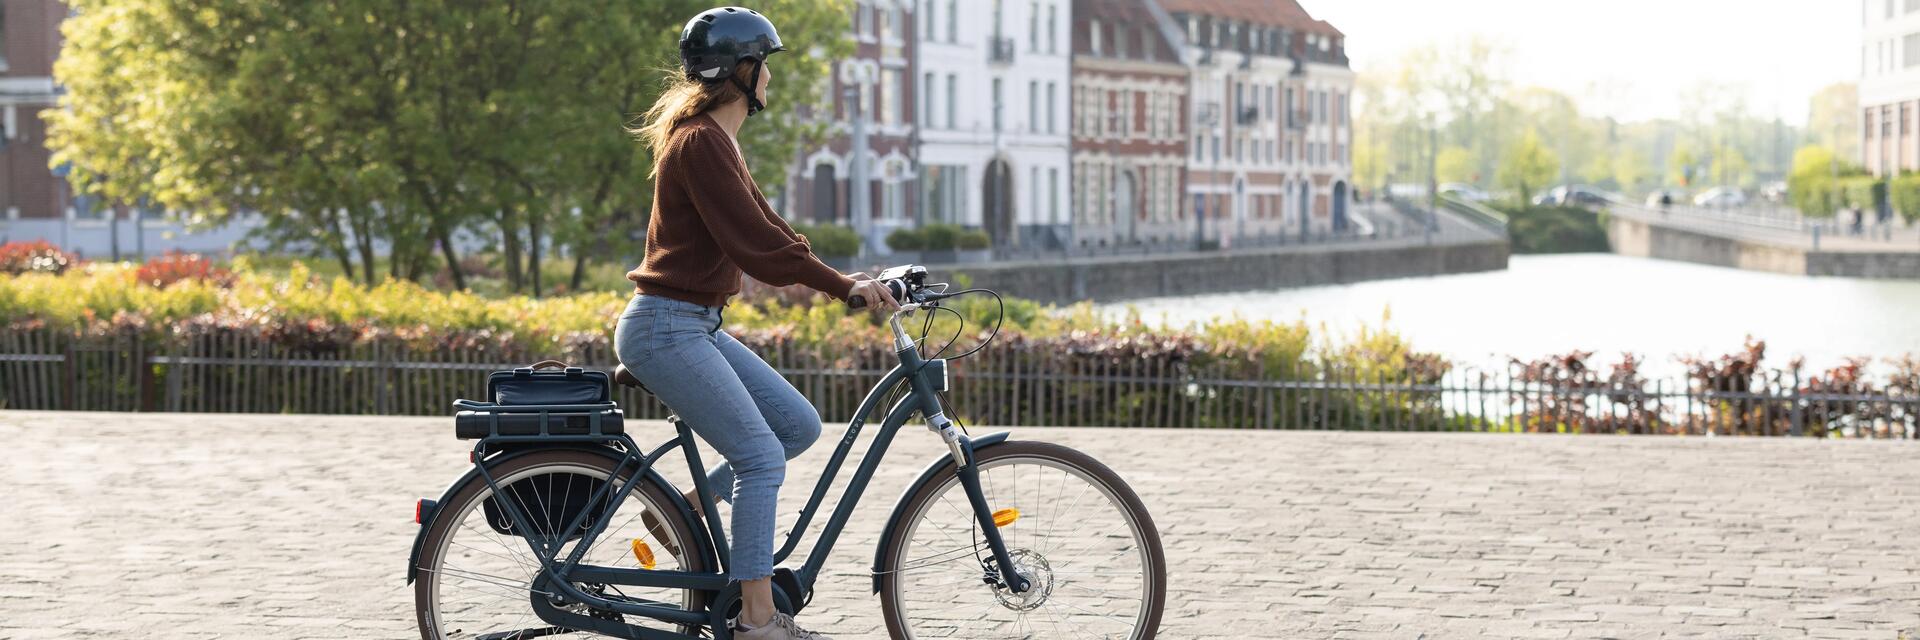 Kobieta jadąca na rowerze elektrycznym w kasku